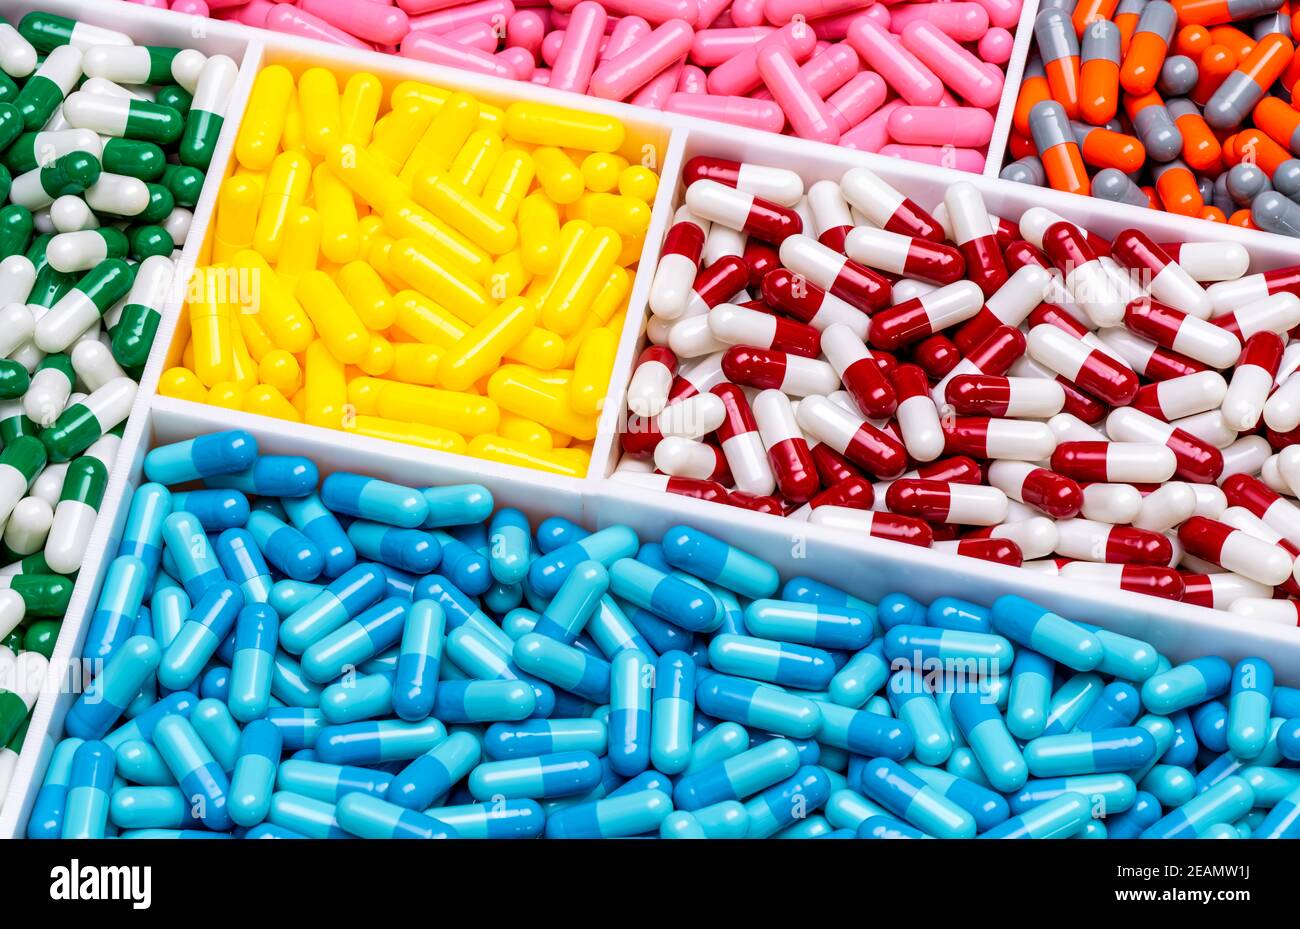 Vista superior de las pastillas de cápsulas de colores en la bandeja de plástico Industria farmacéutica. Salud y medicina. Producción de drogas. Concepto farmacéutico. Vitaminas y suplementos cápsulas. Cápsula de color brillante. Foto de stock